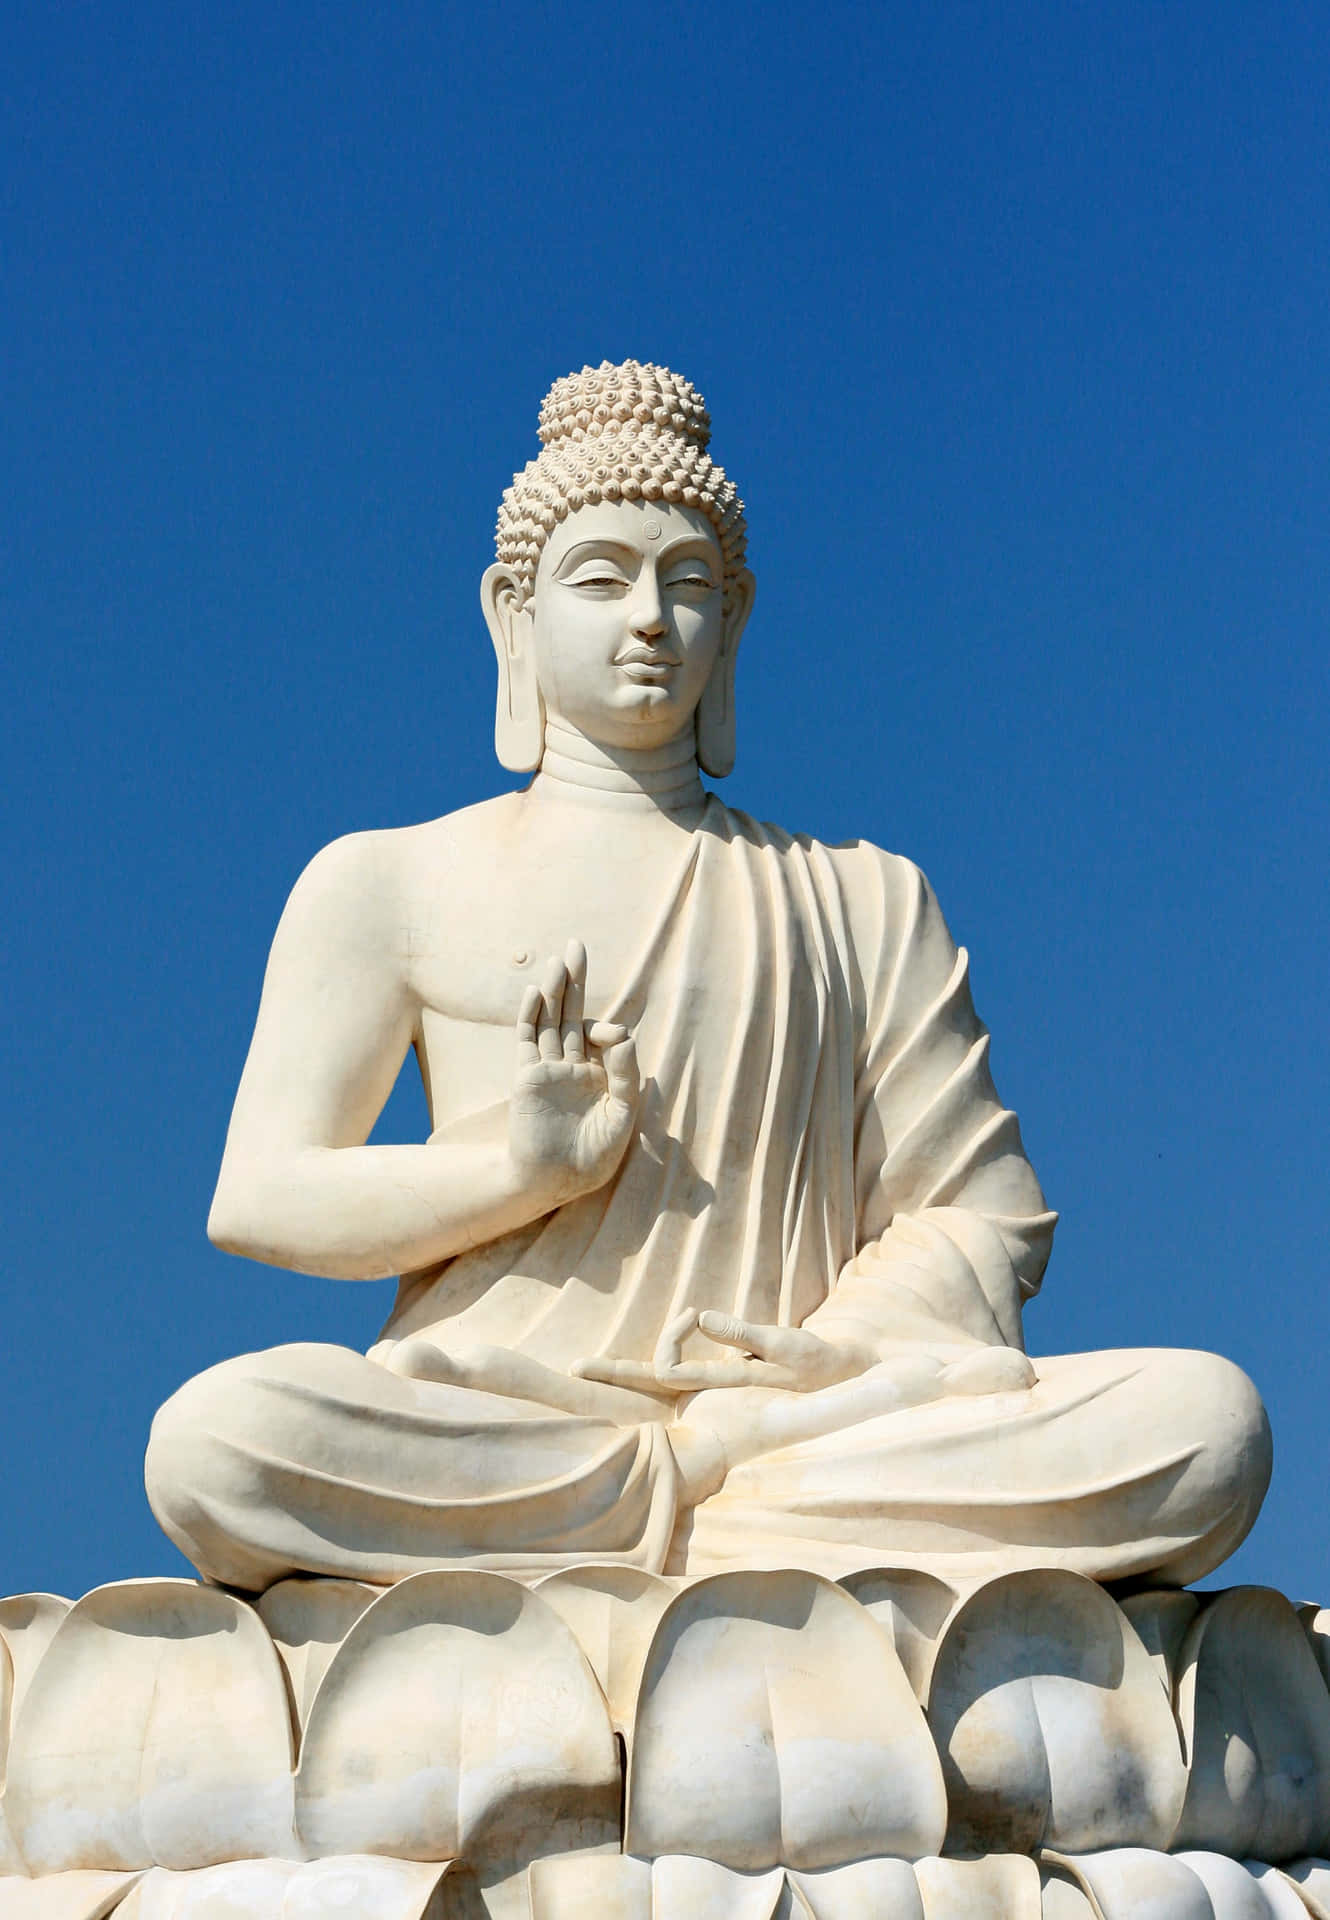 Enlightened One - Gautama Buddha